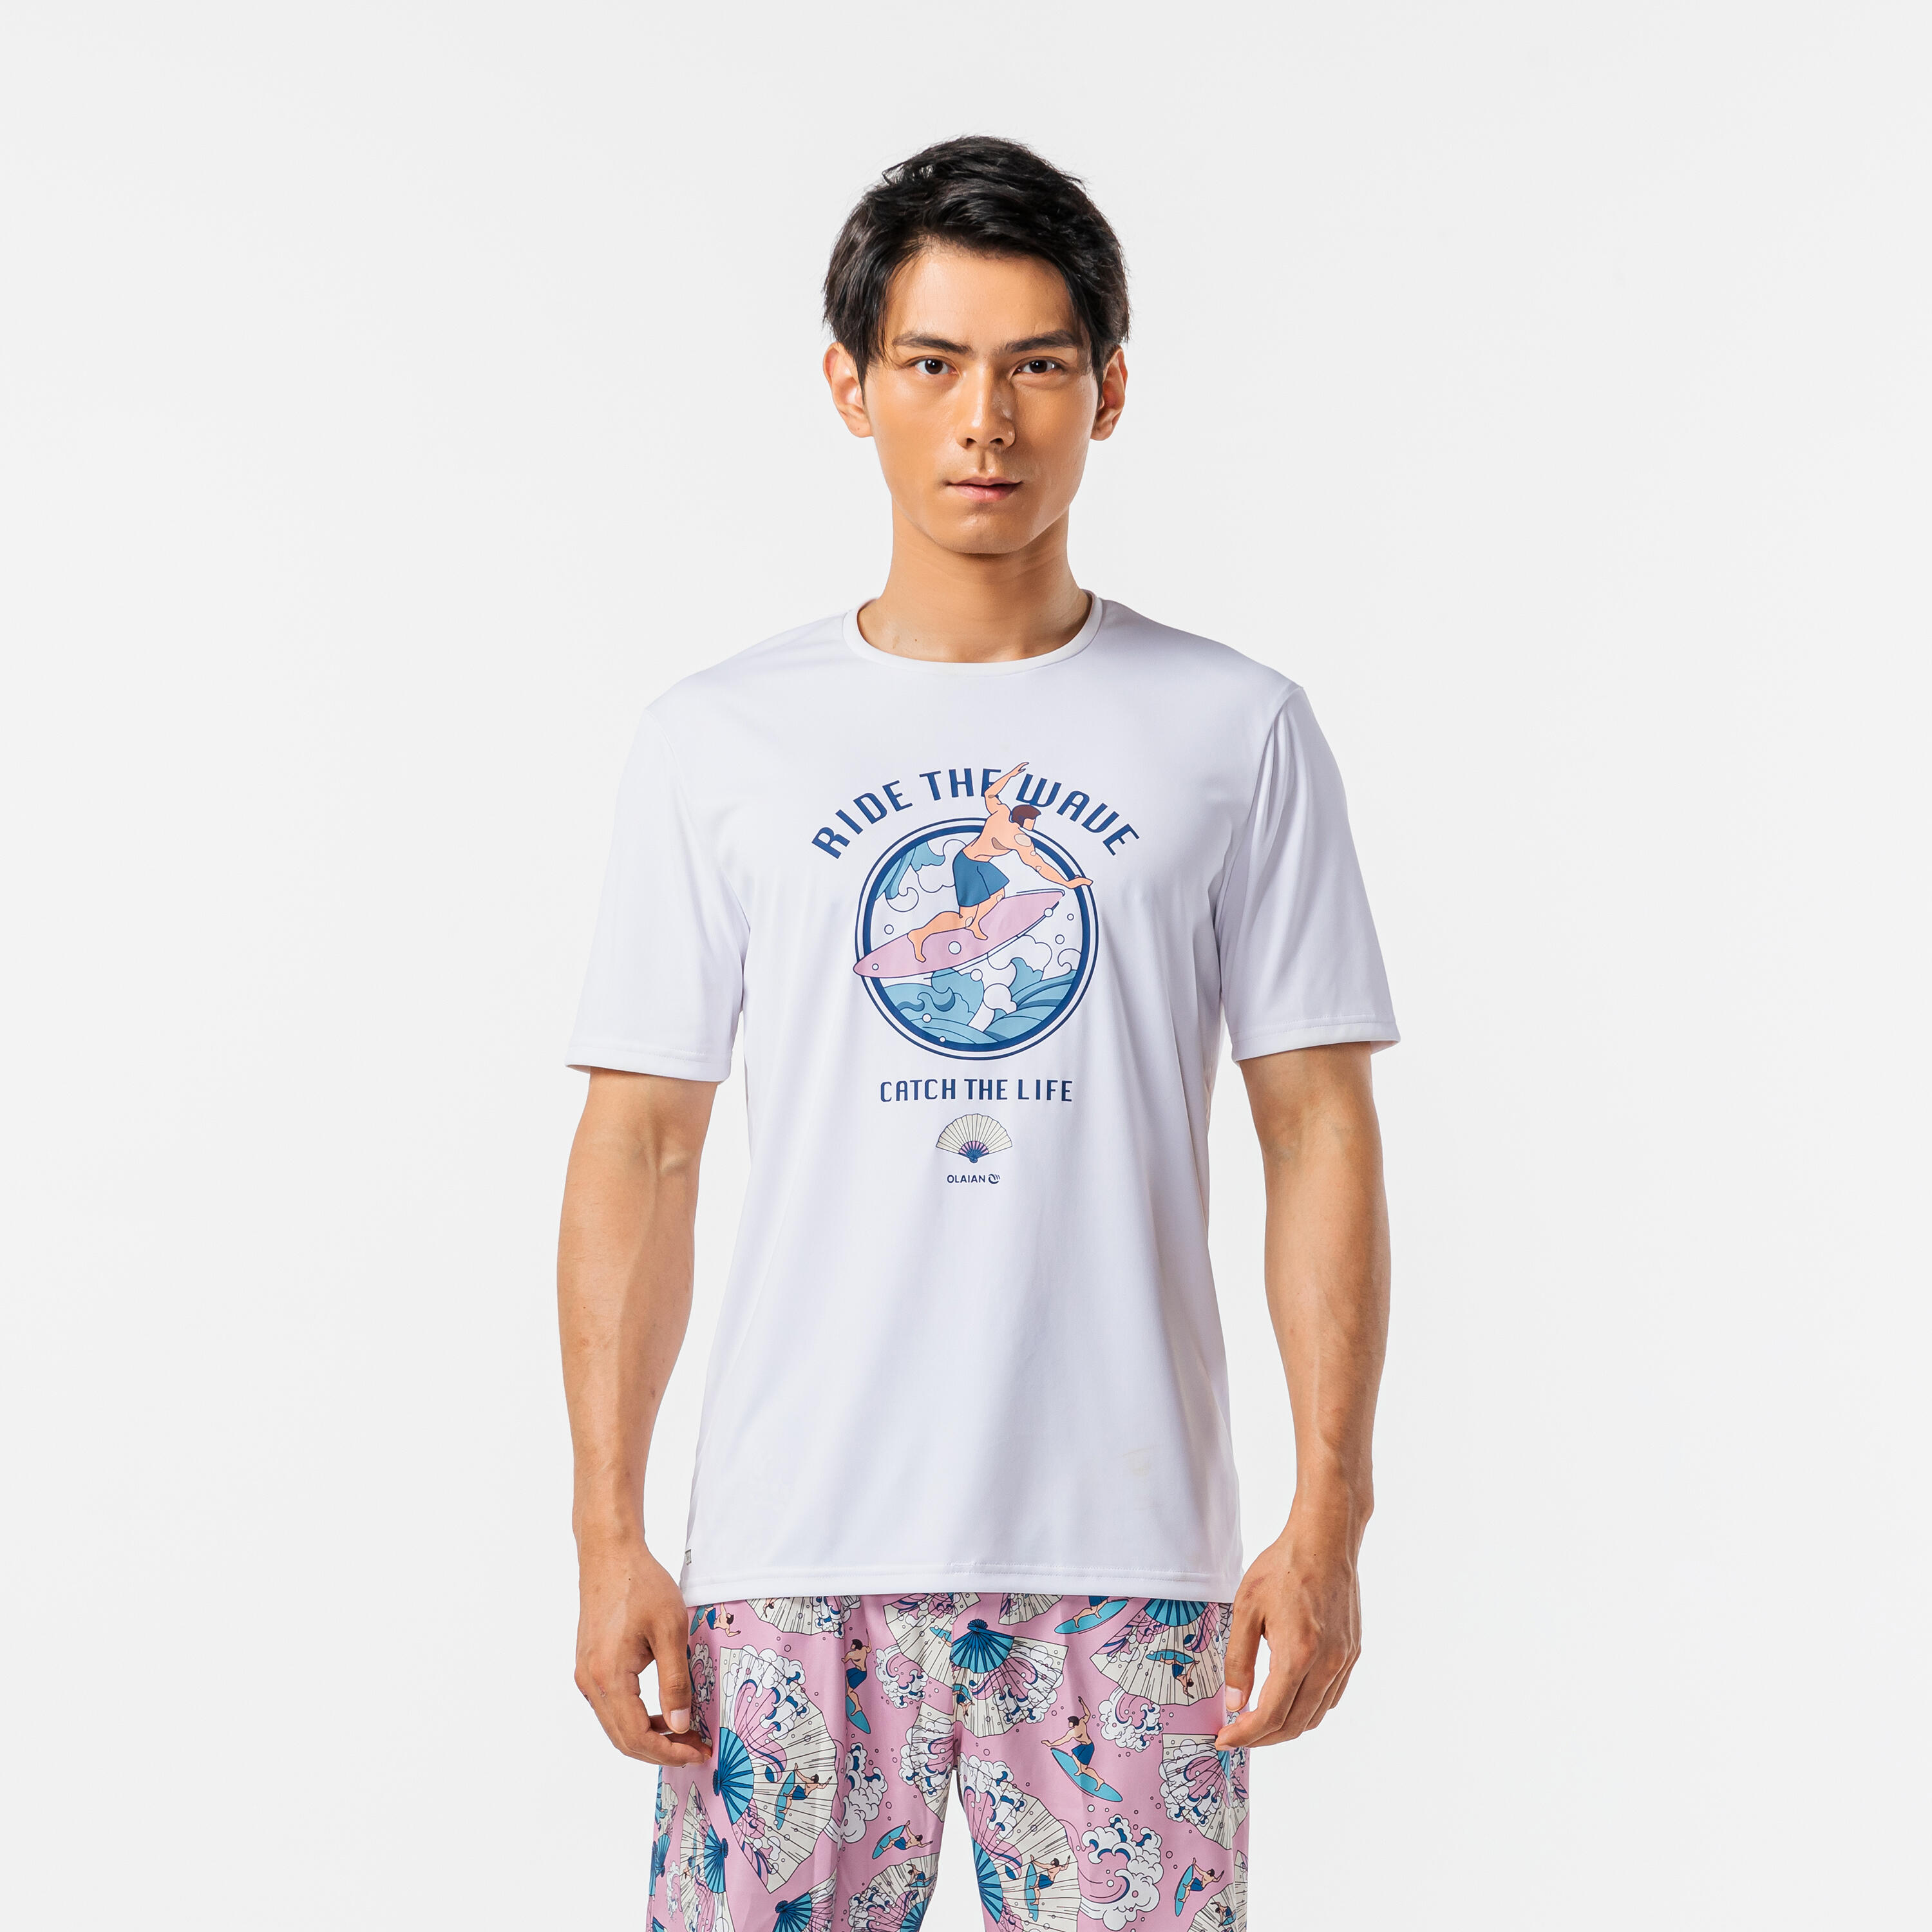 Áo thun Polyester 88% chất lượng cao 12% Spandex Bass PRO Fishing Shirts  Hộp câu cá chép để Bảo vệ chống tia UV ngoài trời trên bãi biển nhanh chóng  - Trung Quốc Quần áo bảo hộ y một kiện hàng giá